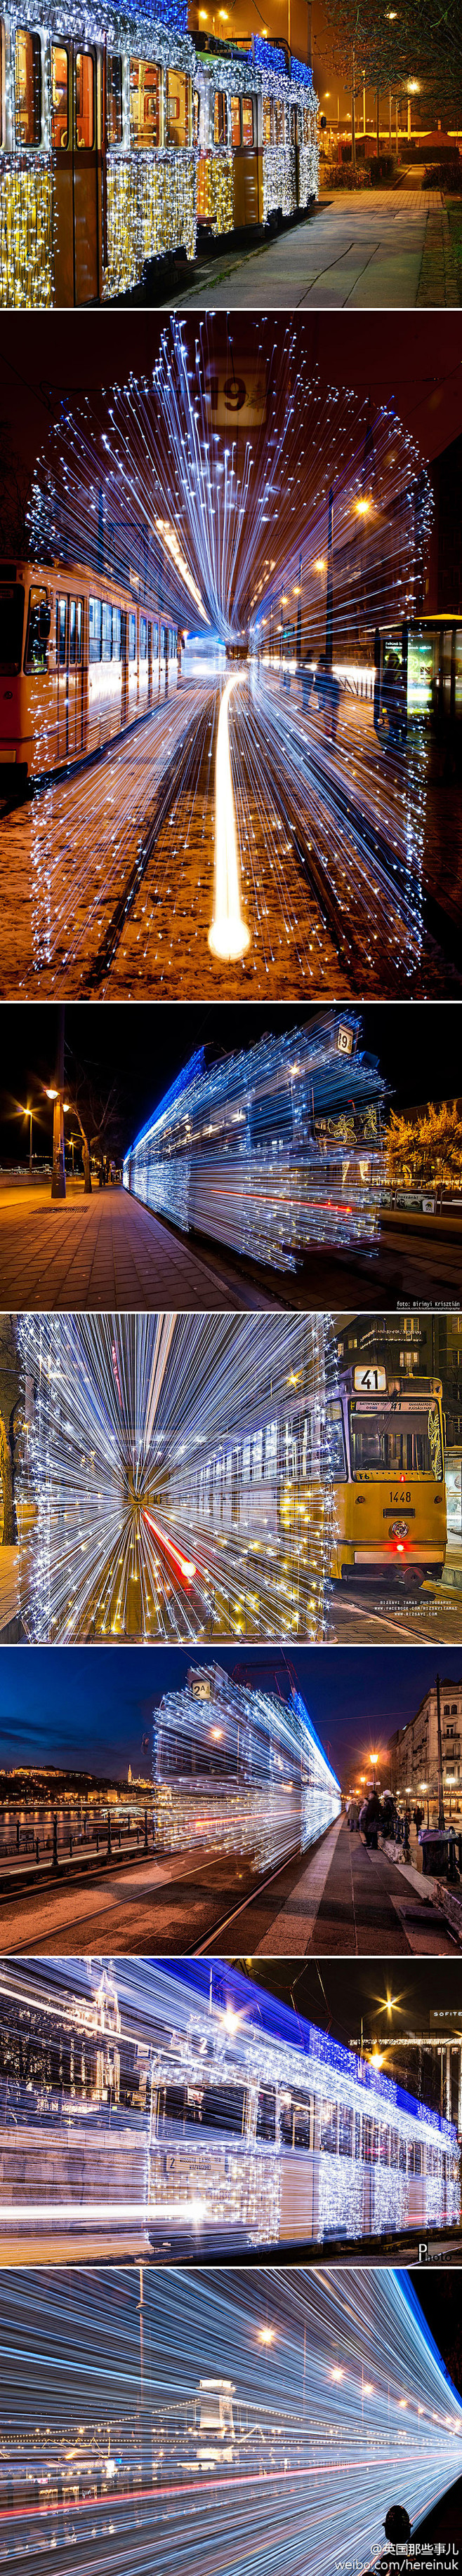 布达佩斯的一列装了3万个LED小灯的电车...